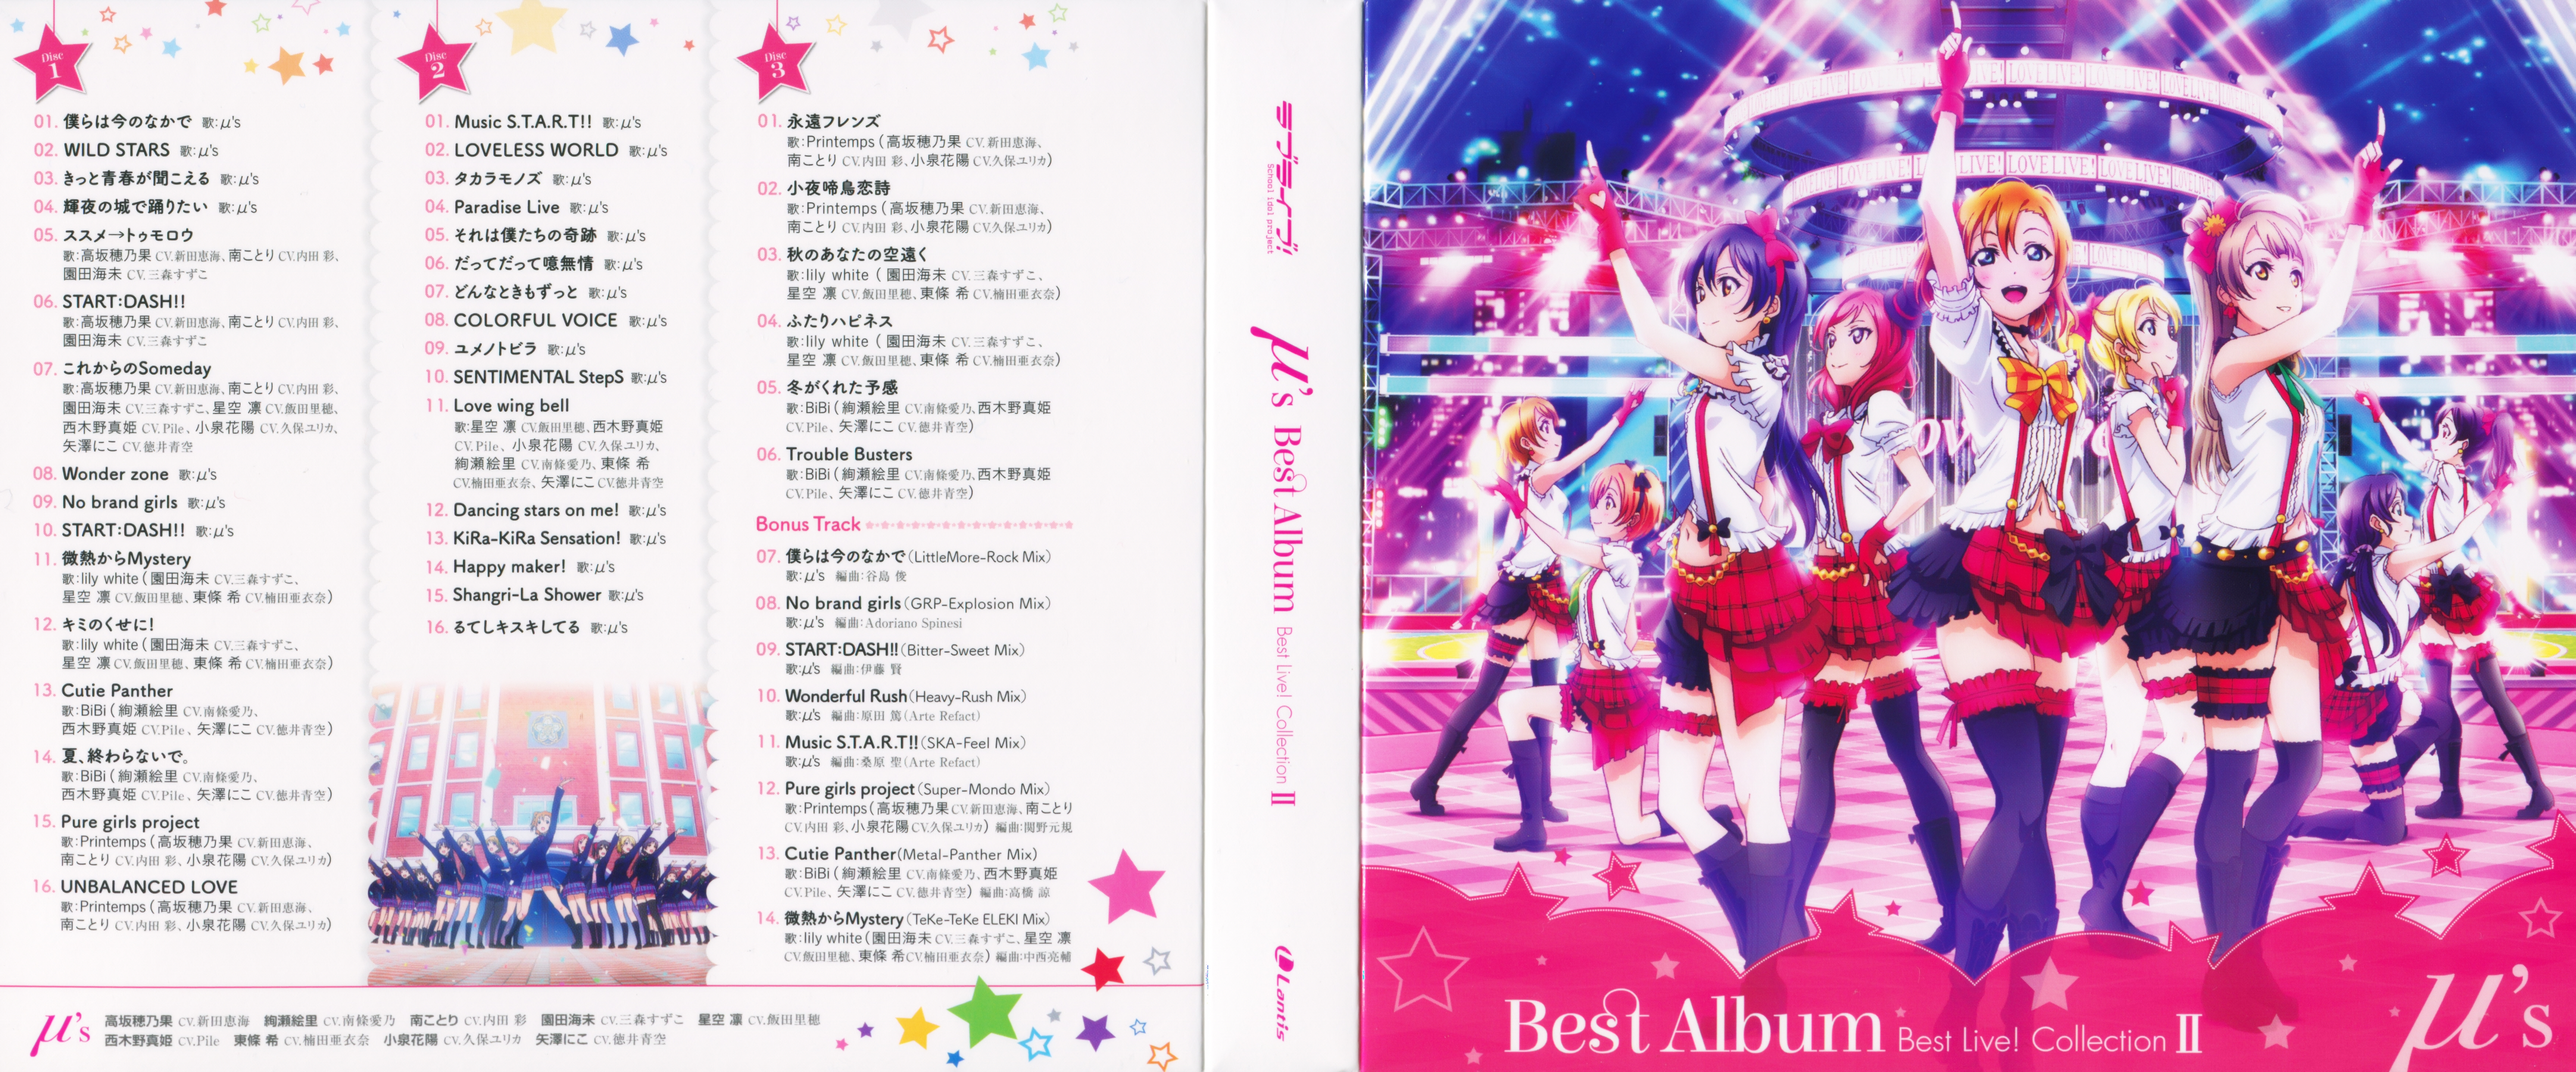 μ's Best Album Best Live! Collection II | Love Live! Wiki | Fandom